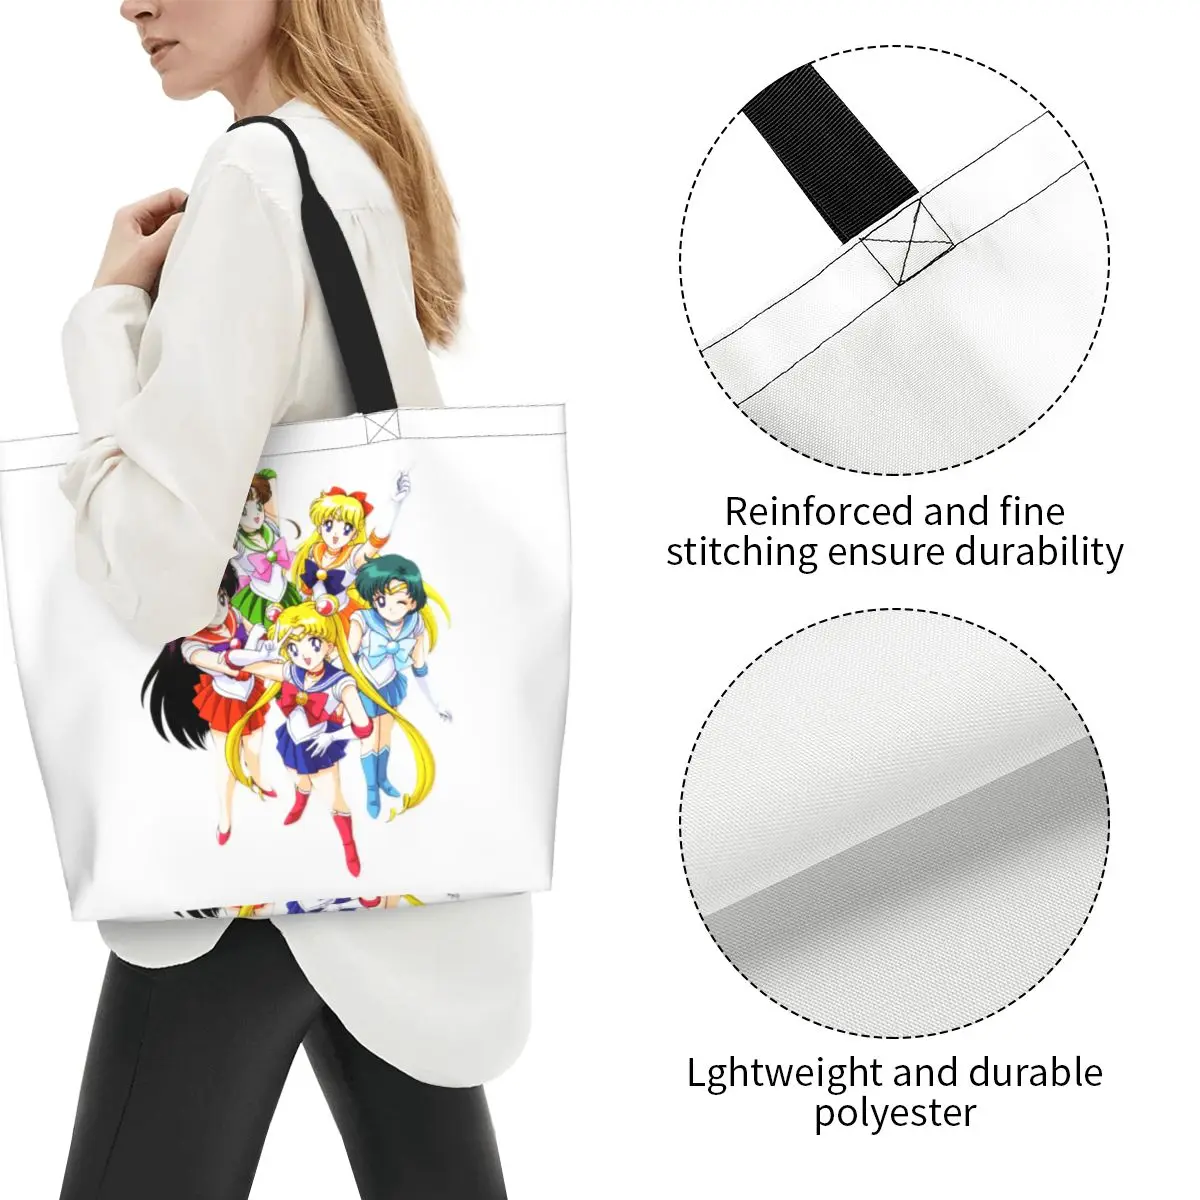 Милые сумки для покупок в японском стиле седзе-манга в стиле сейлор, портативная холщовая сумка для покупок в стиле аниме 